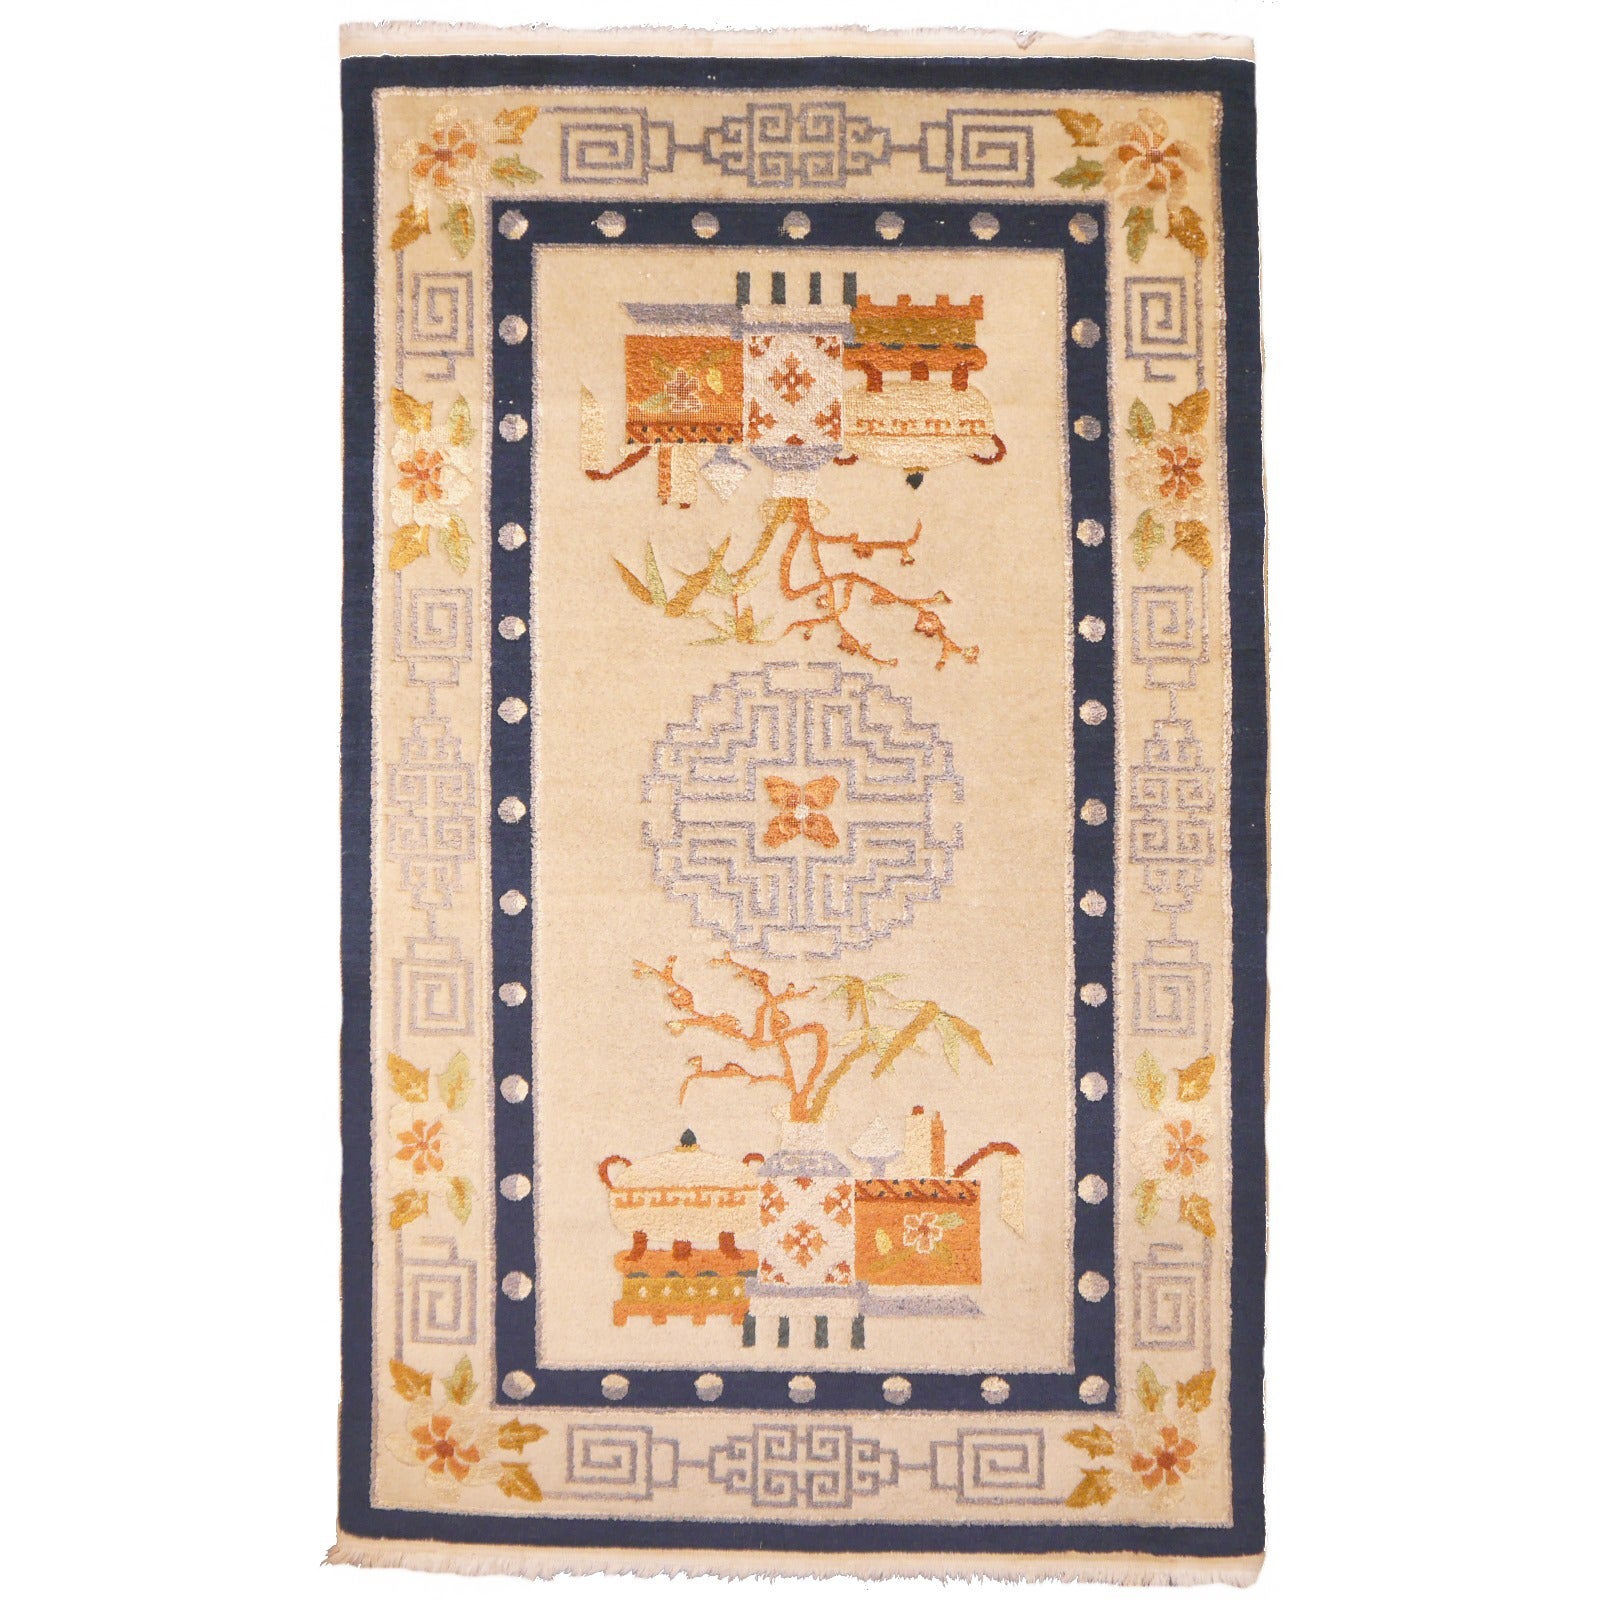 Chinesischer Vintage-Teppich aus Wolle und Seide